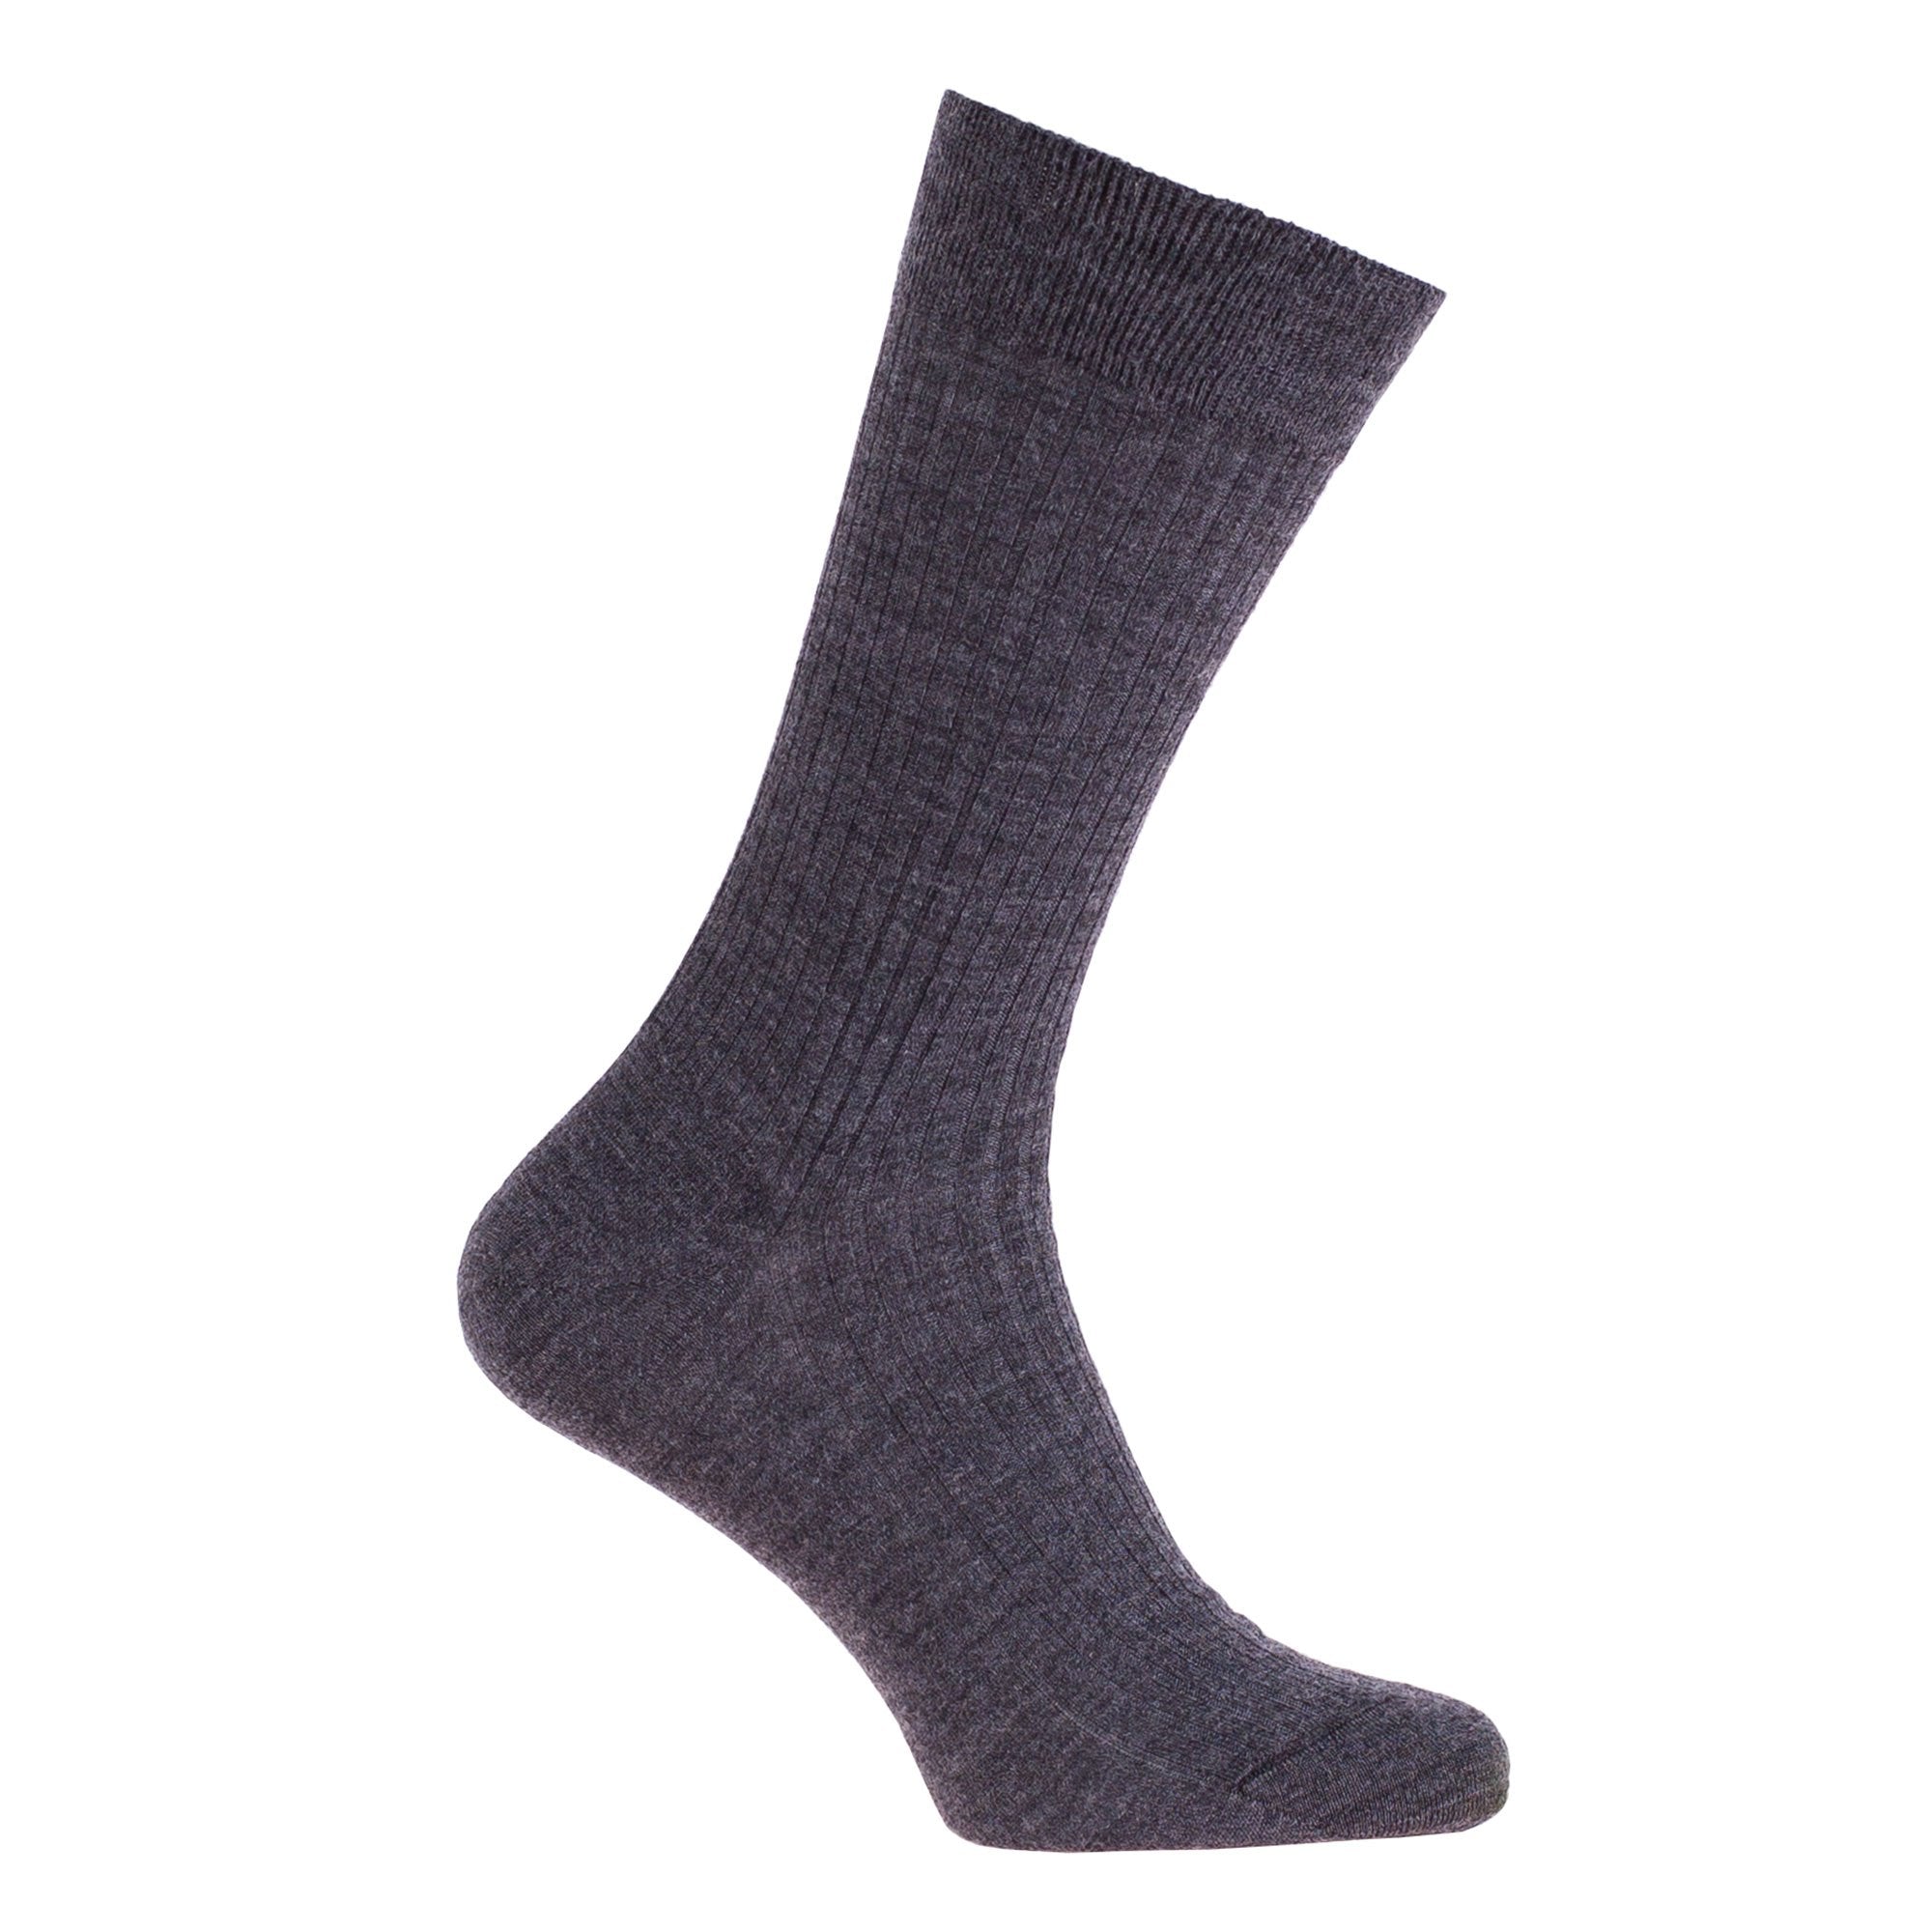 Merino Socks | 100% Merino Wool Tailored Sock | The Wool Company